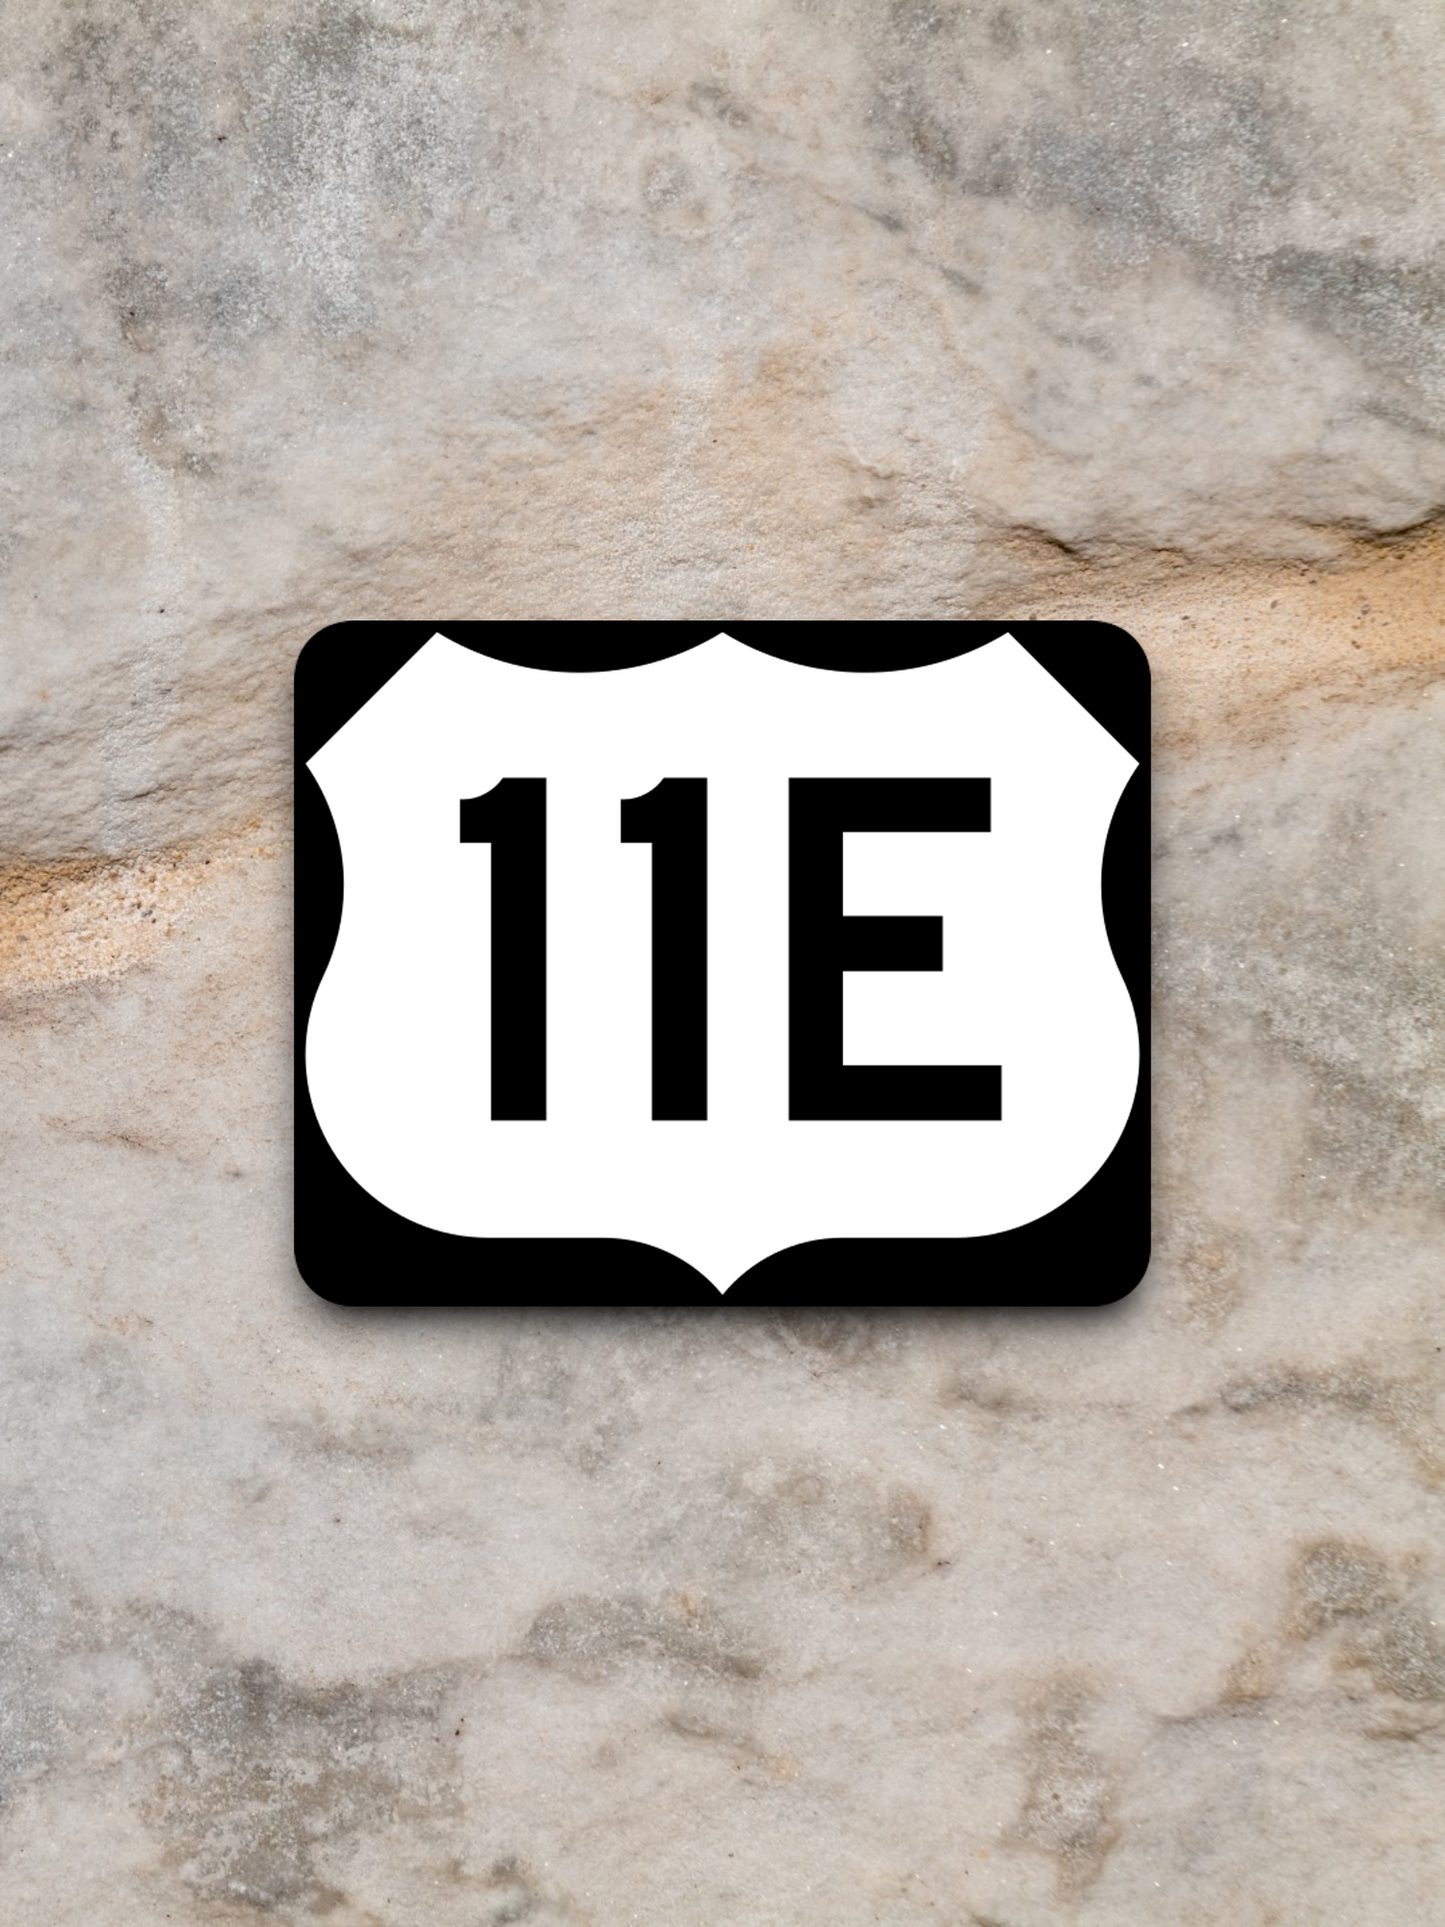 U.S. Route 11E Road Sign Sticker